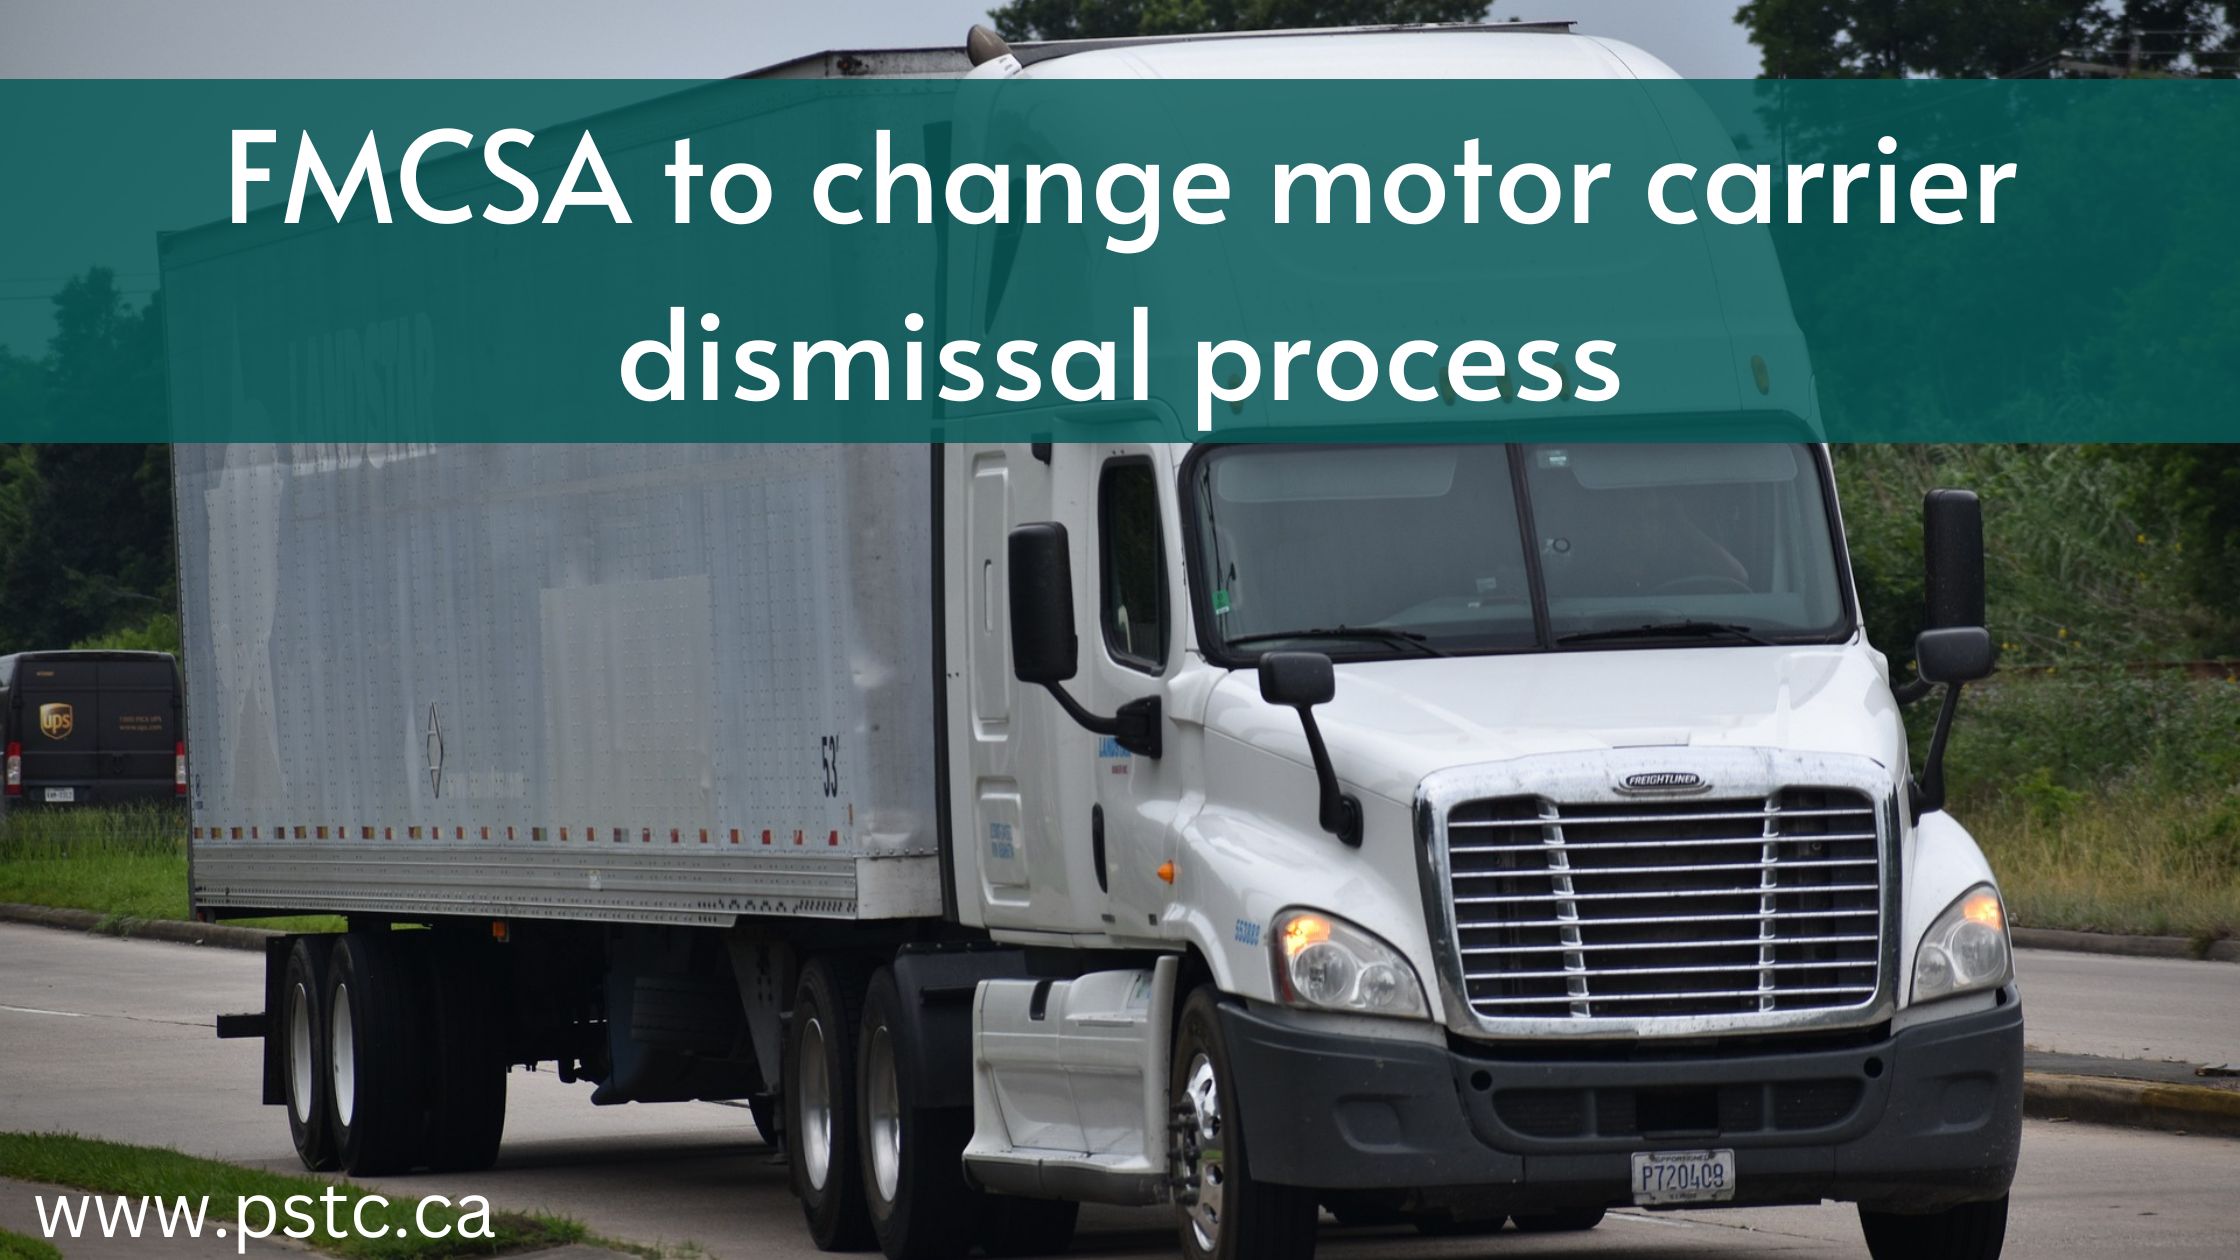 FMCSA Motor Carrier Dismissal process